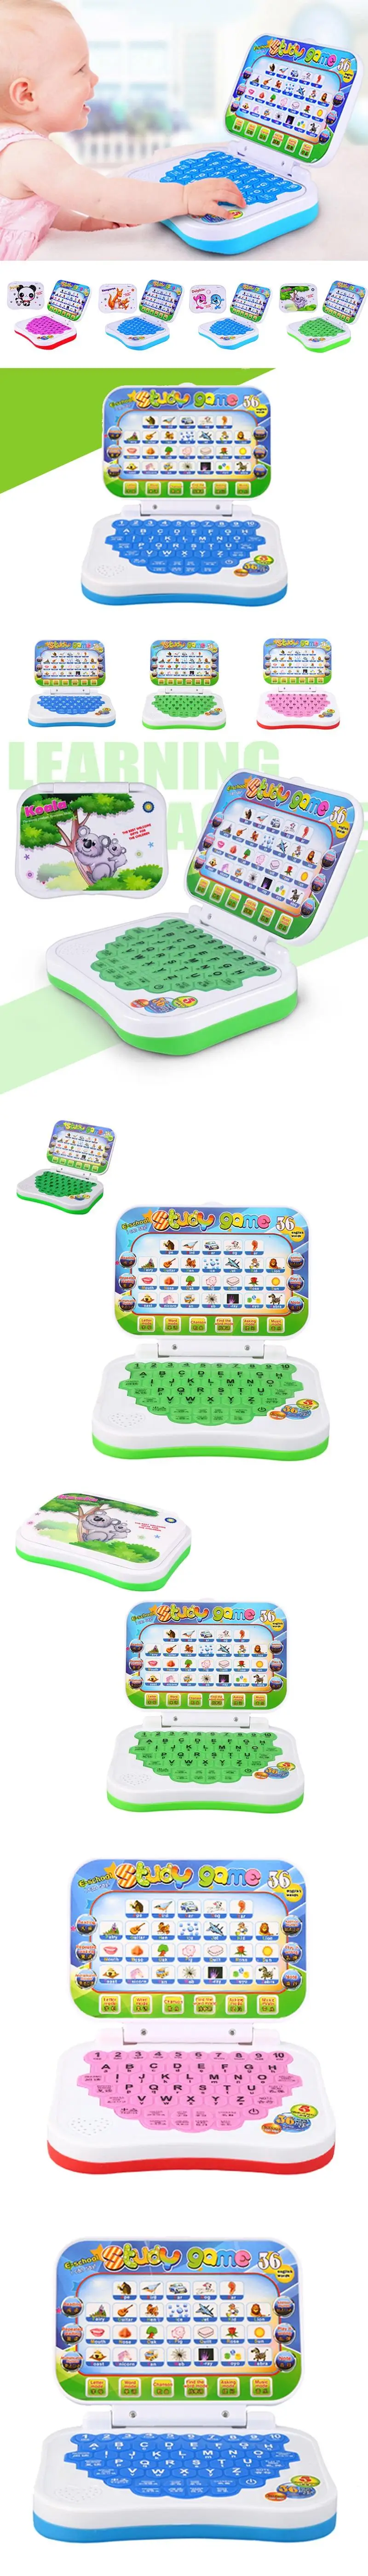 Многофункциональная обучающая машина Английский ранний планшетный компьютер игрушка Детские Развивающие игрушки для детей обучающая машина для чтения